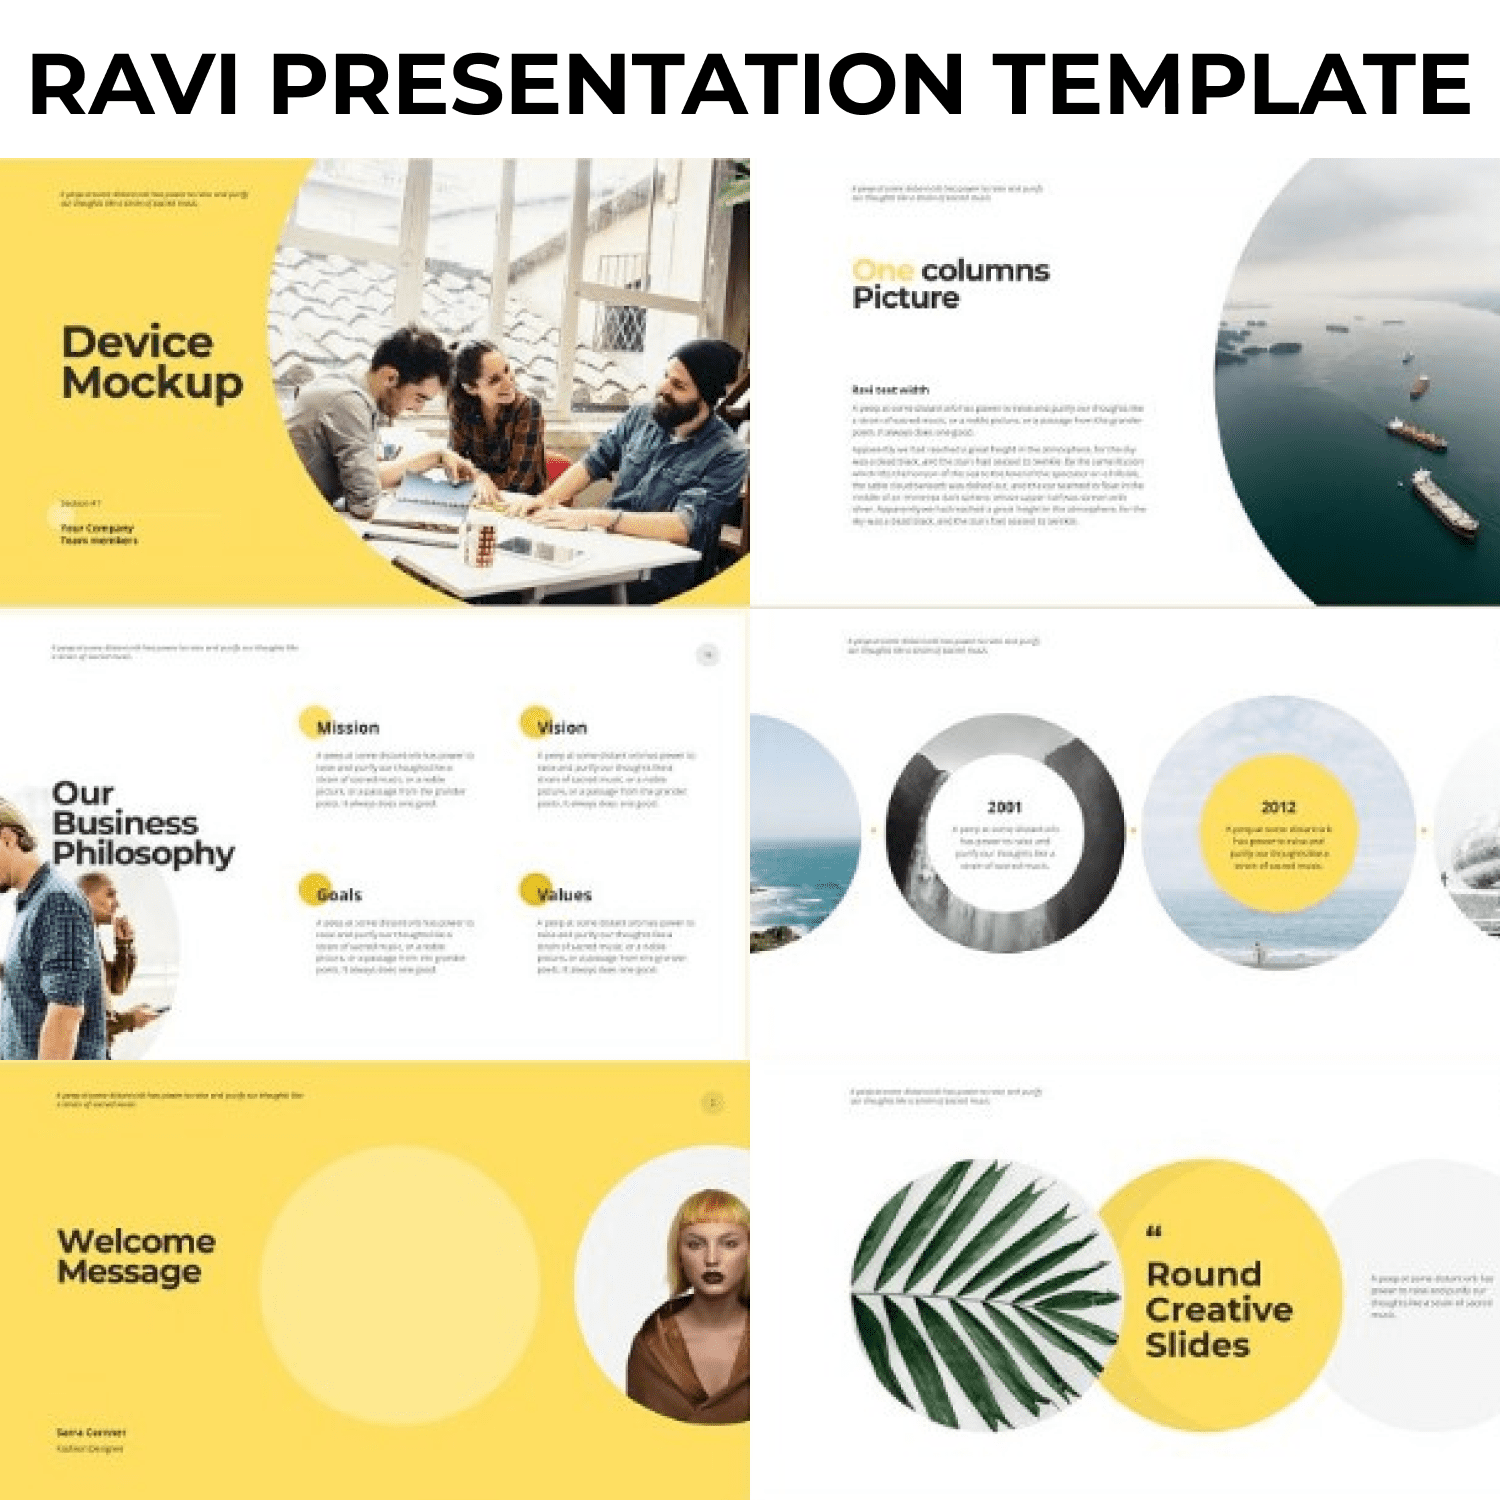 RAVI Presentation Template by MasterBundles.